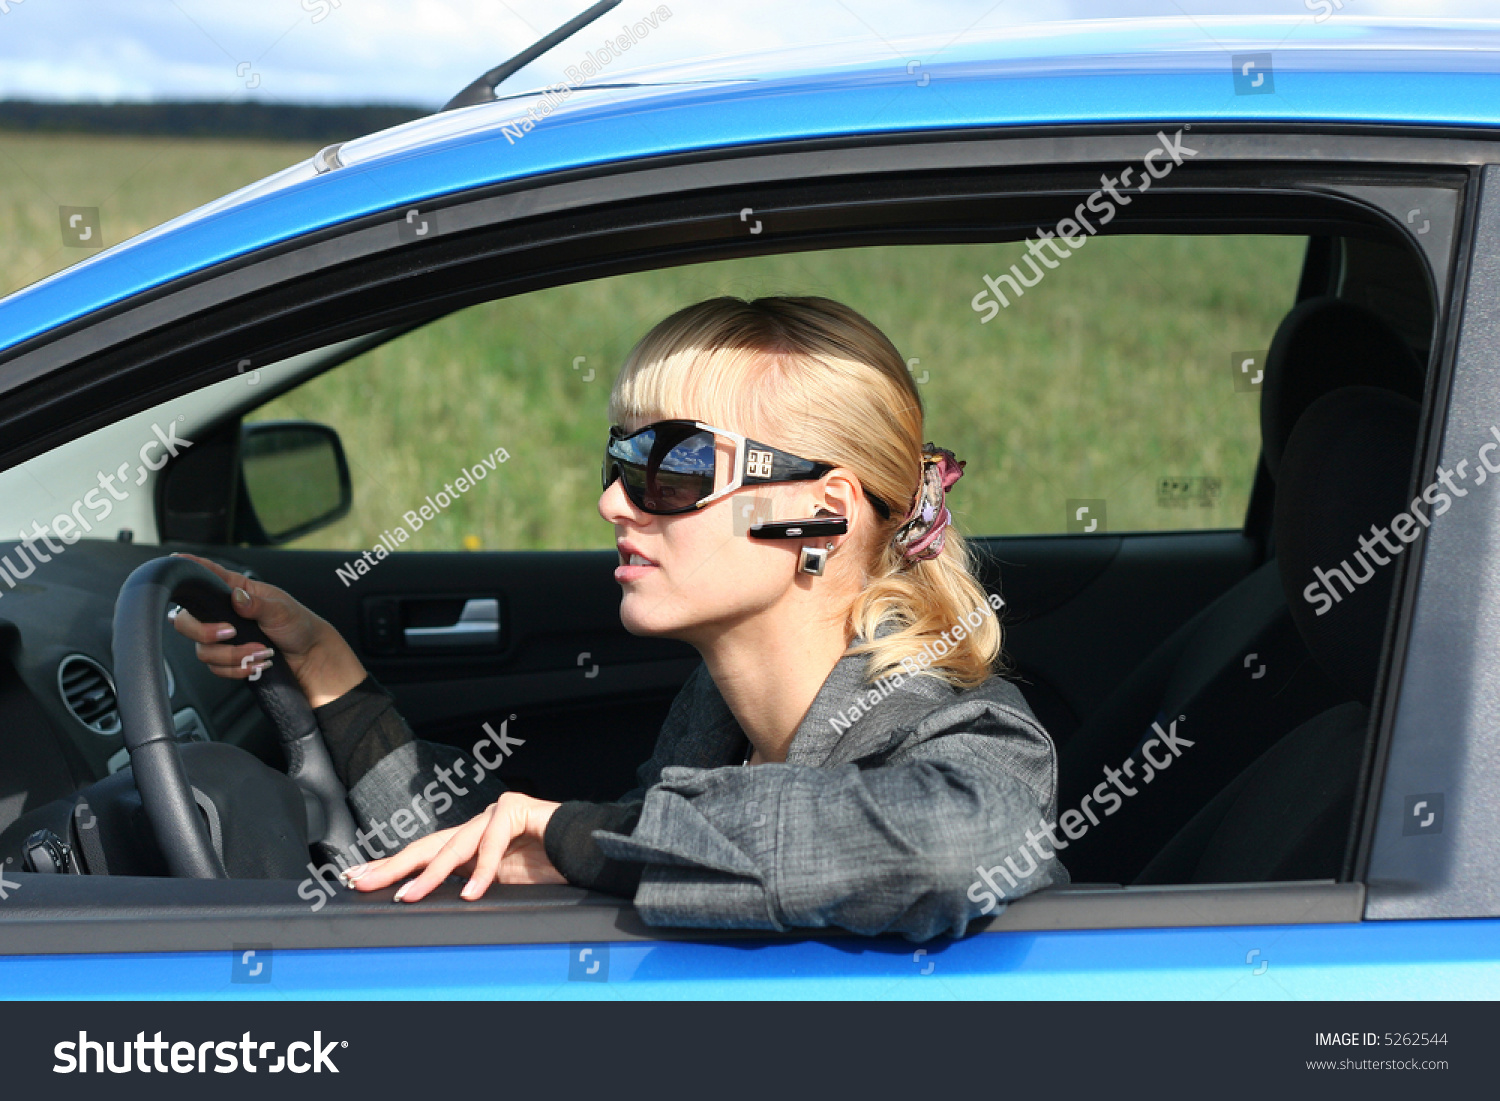 фото блондинок в машине в очках